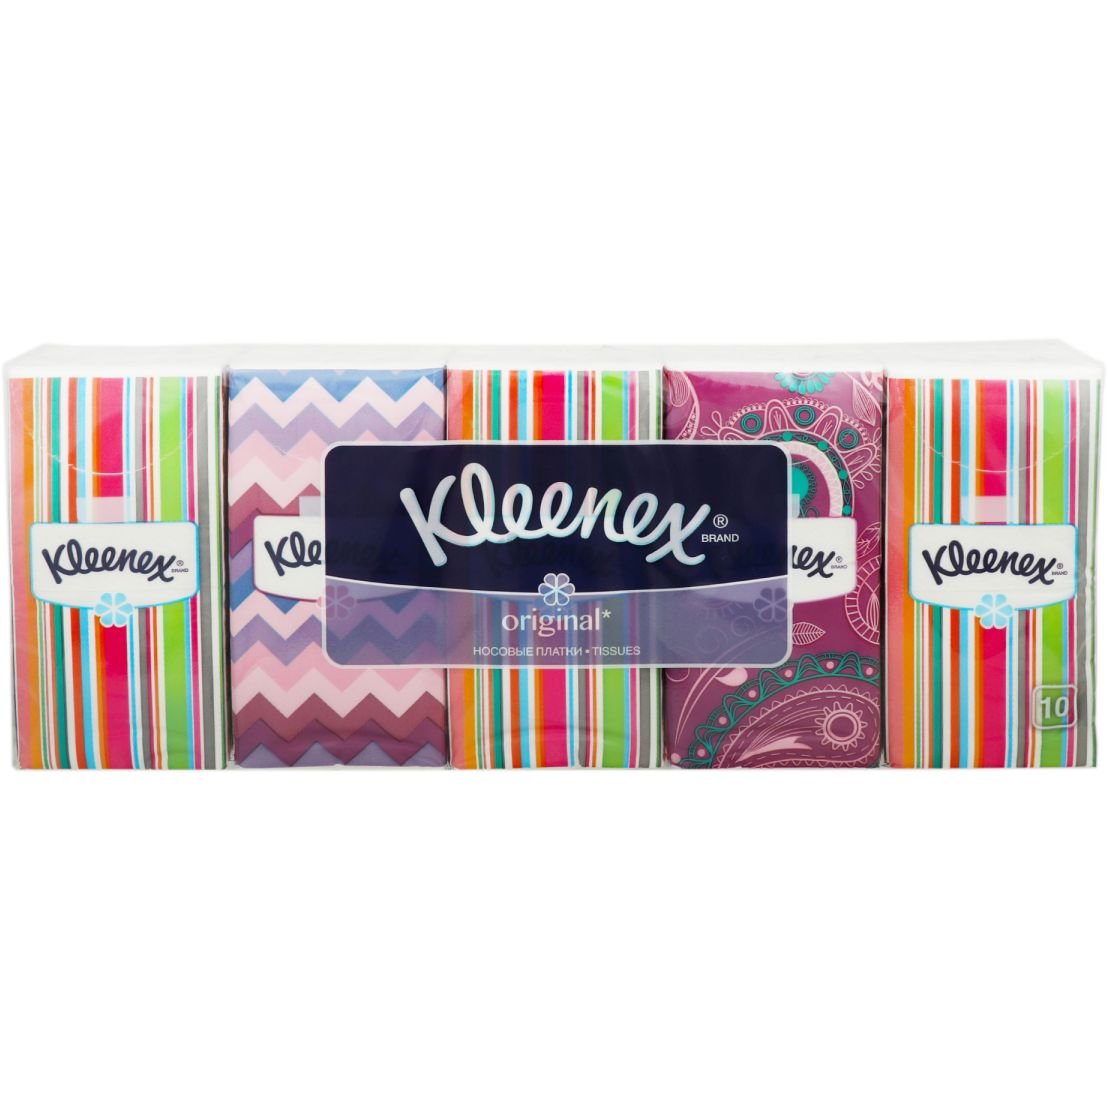 Носовые платочки Kleenex Original, 100 шт. (10 упаковок по 10 шт.) - фото 1